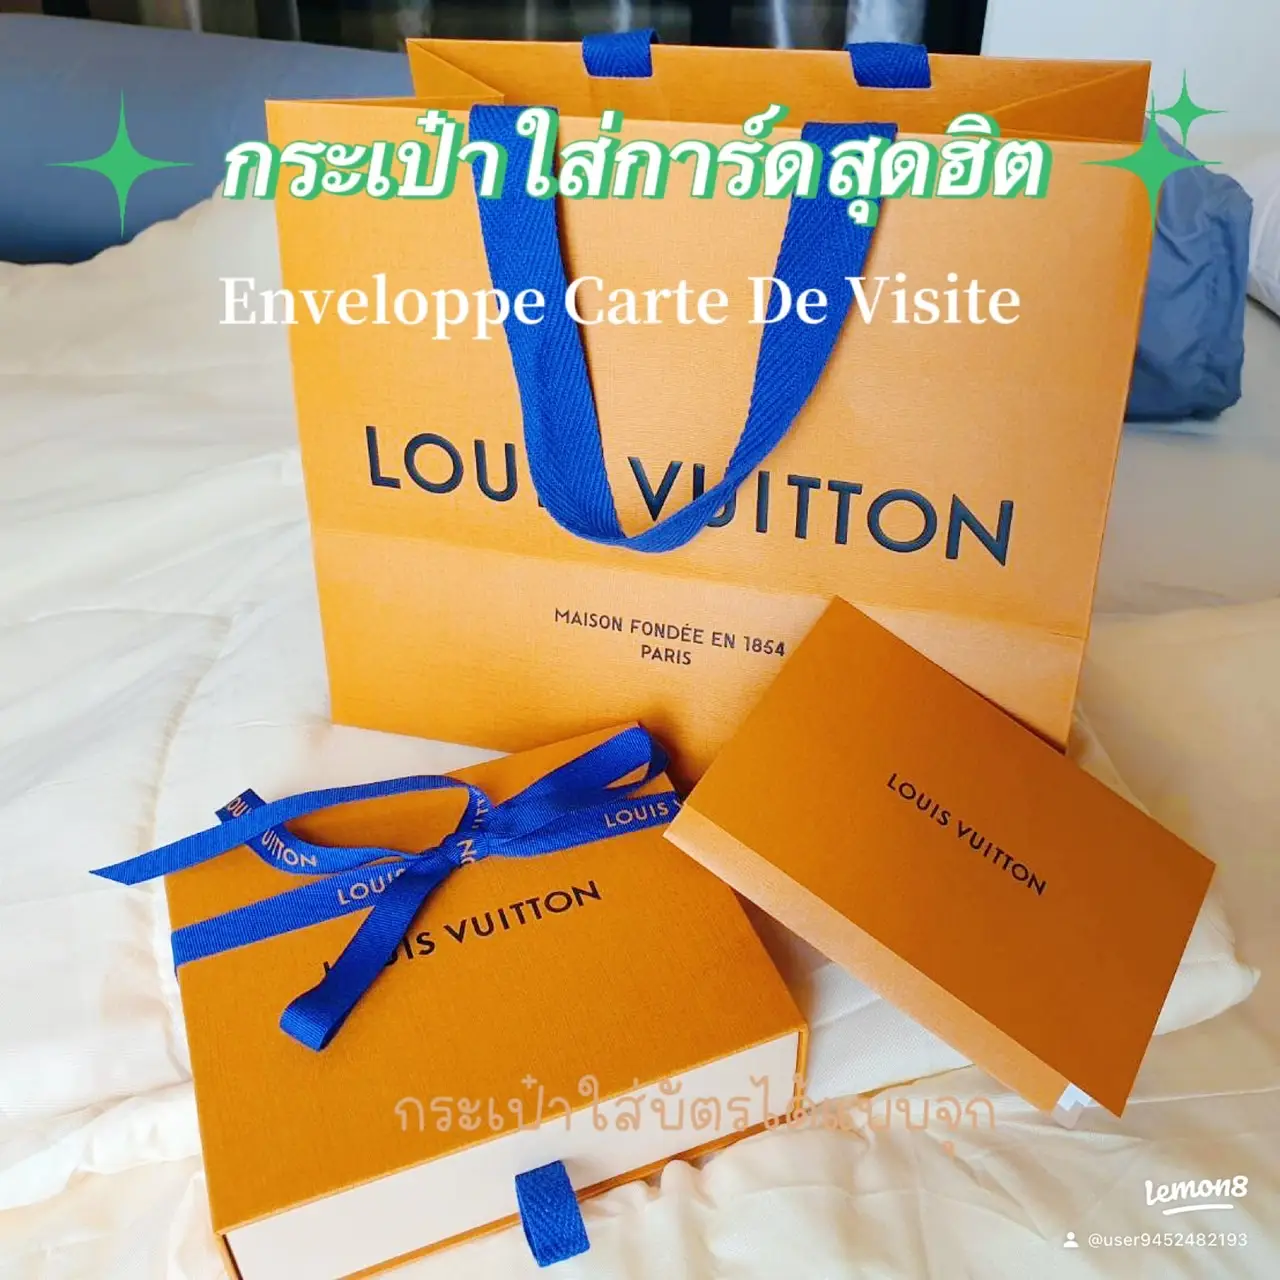 ENVELOPPE CARTE DE VISITE LOUIS VUITTON UNBOXING 